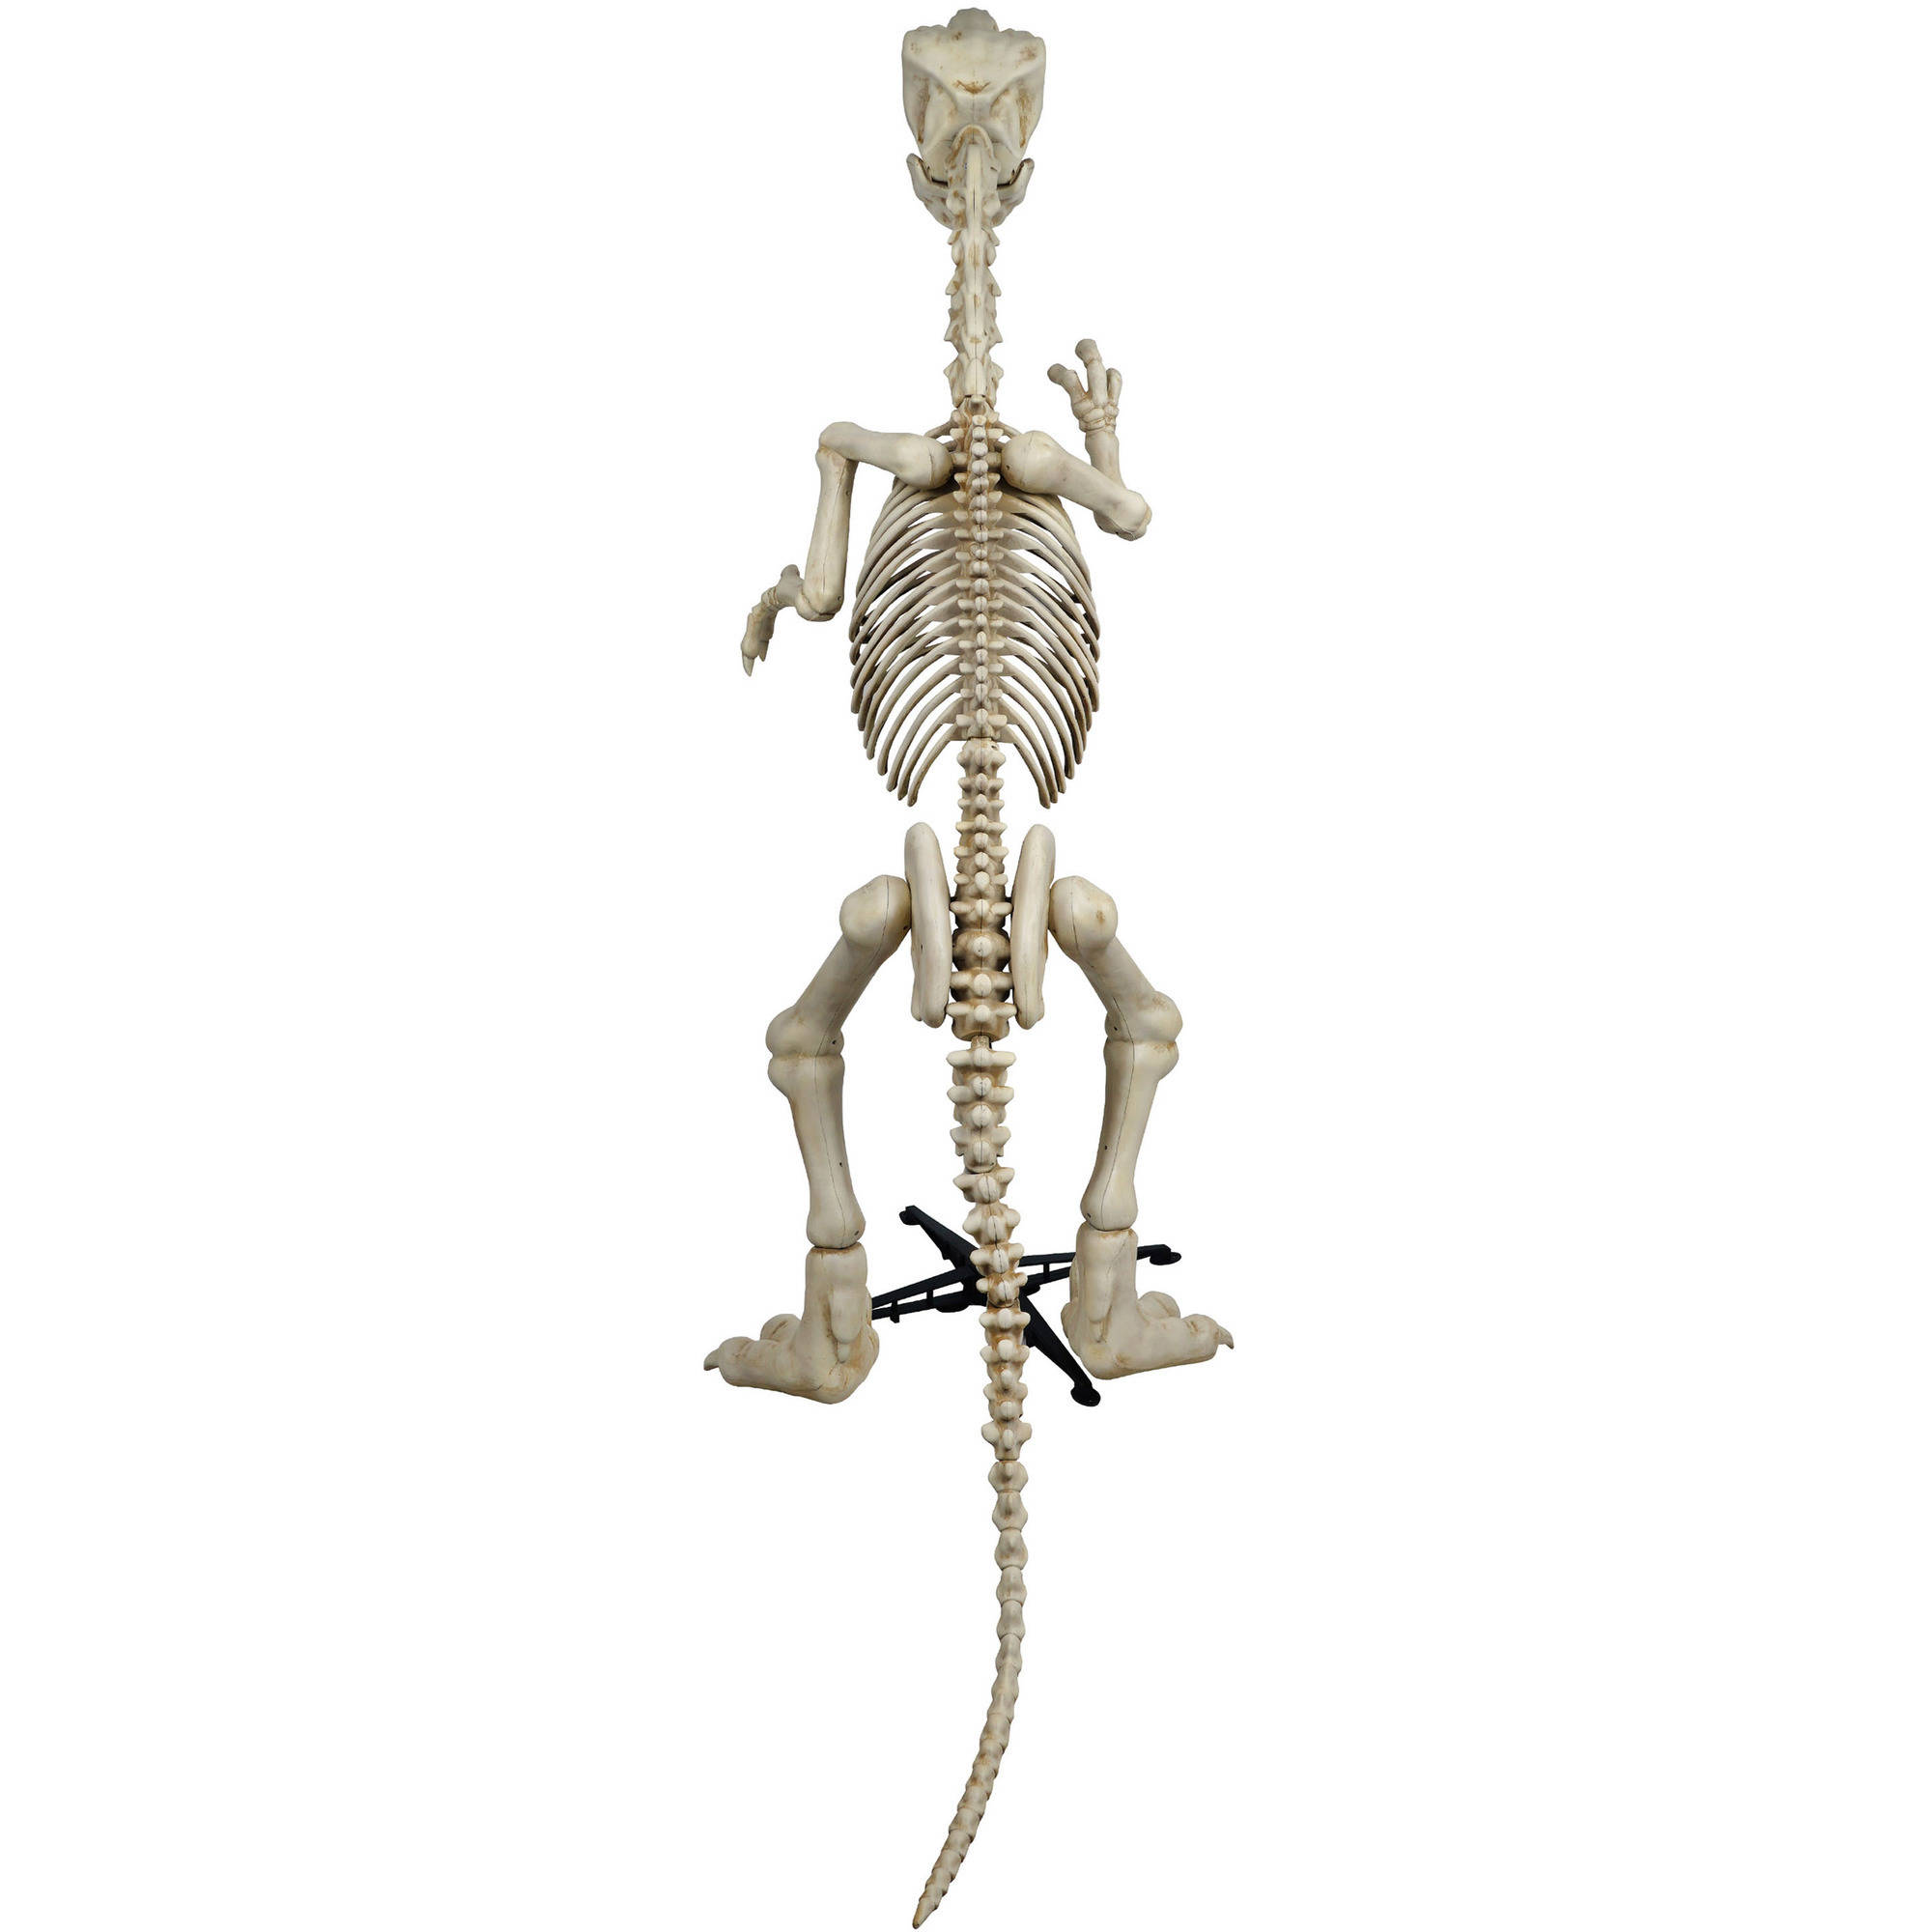 6 ft. Standing Skeleton Raptor with LED Illuminated Eyes Halloween Decoration - image 2 of 3